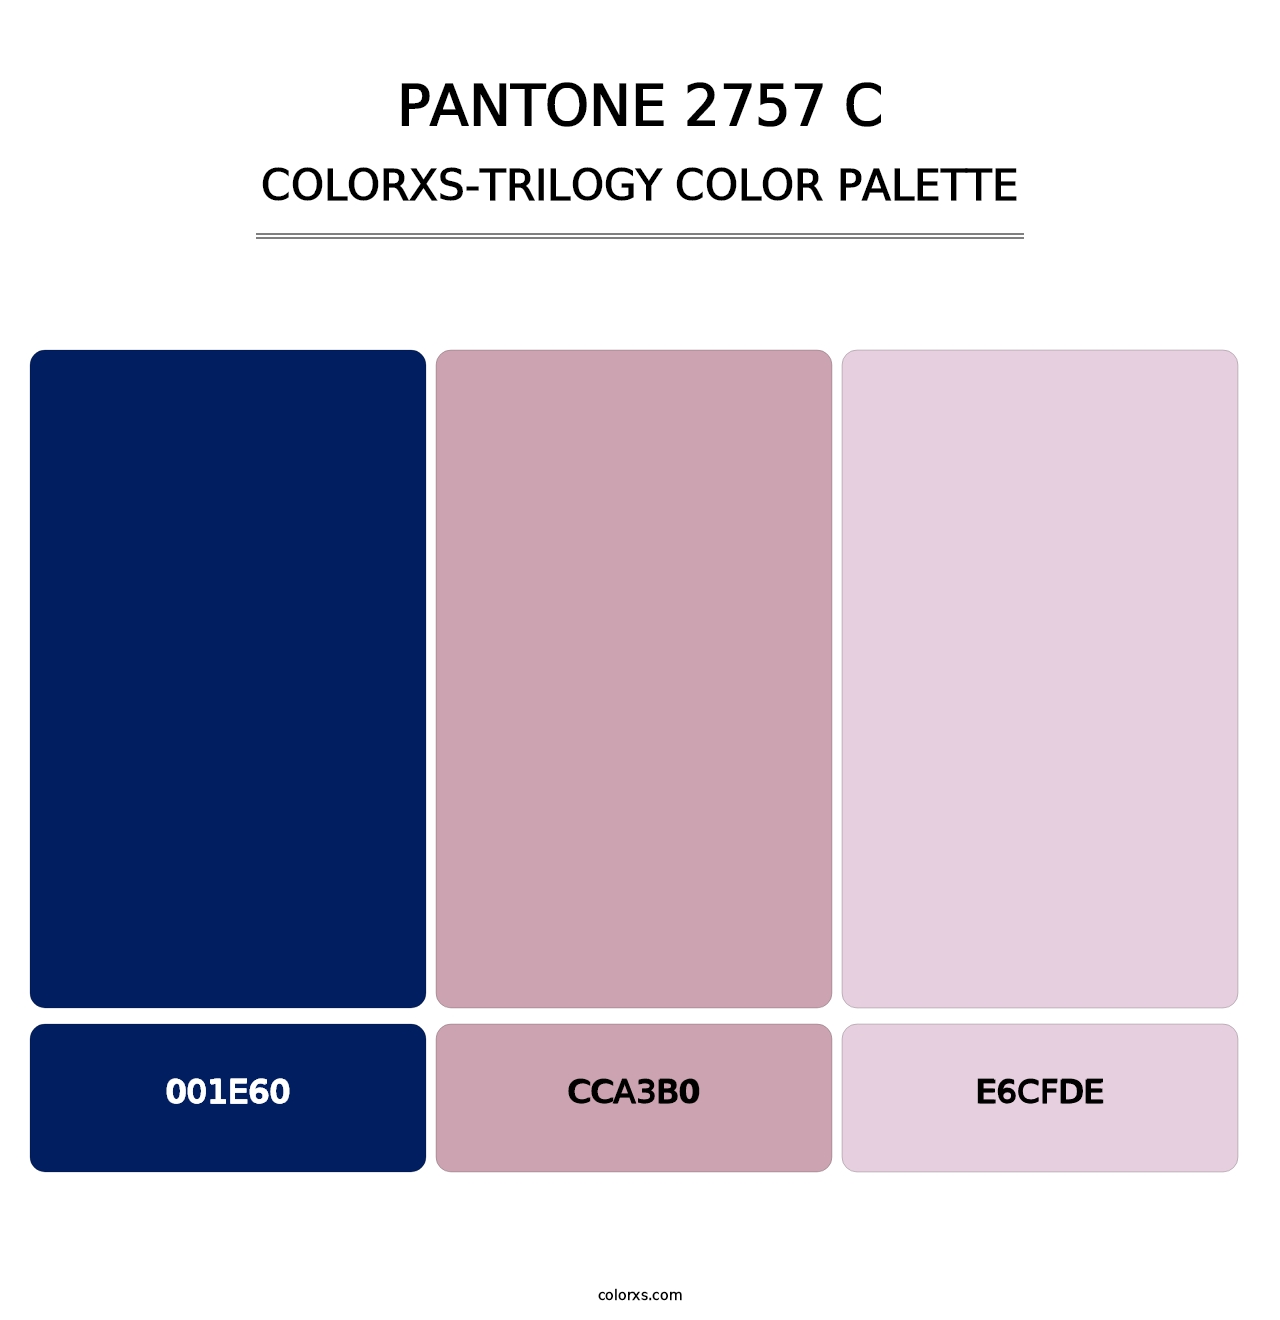 PANTONE 2757 C - Colorxs Trilogy Palette